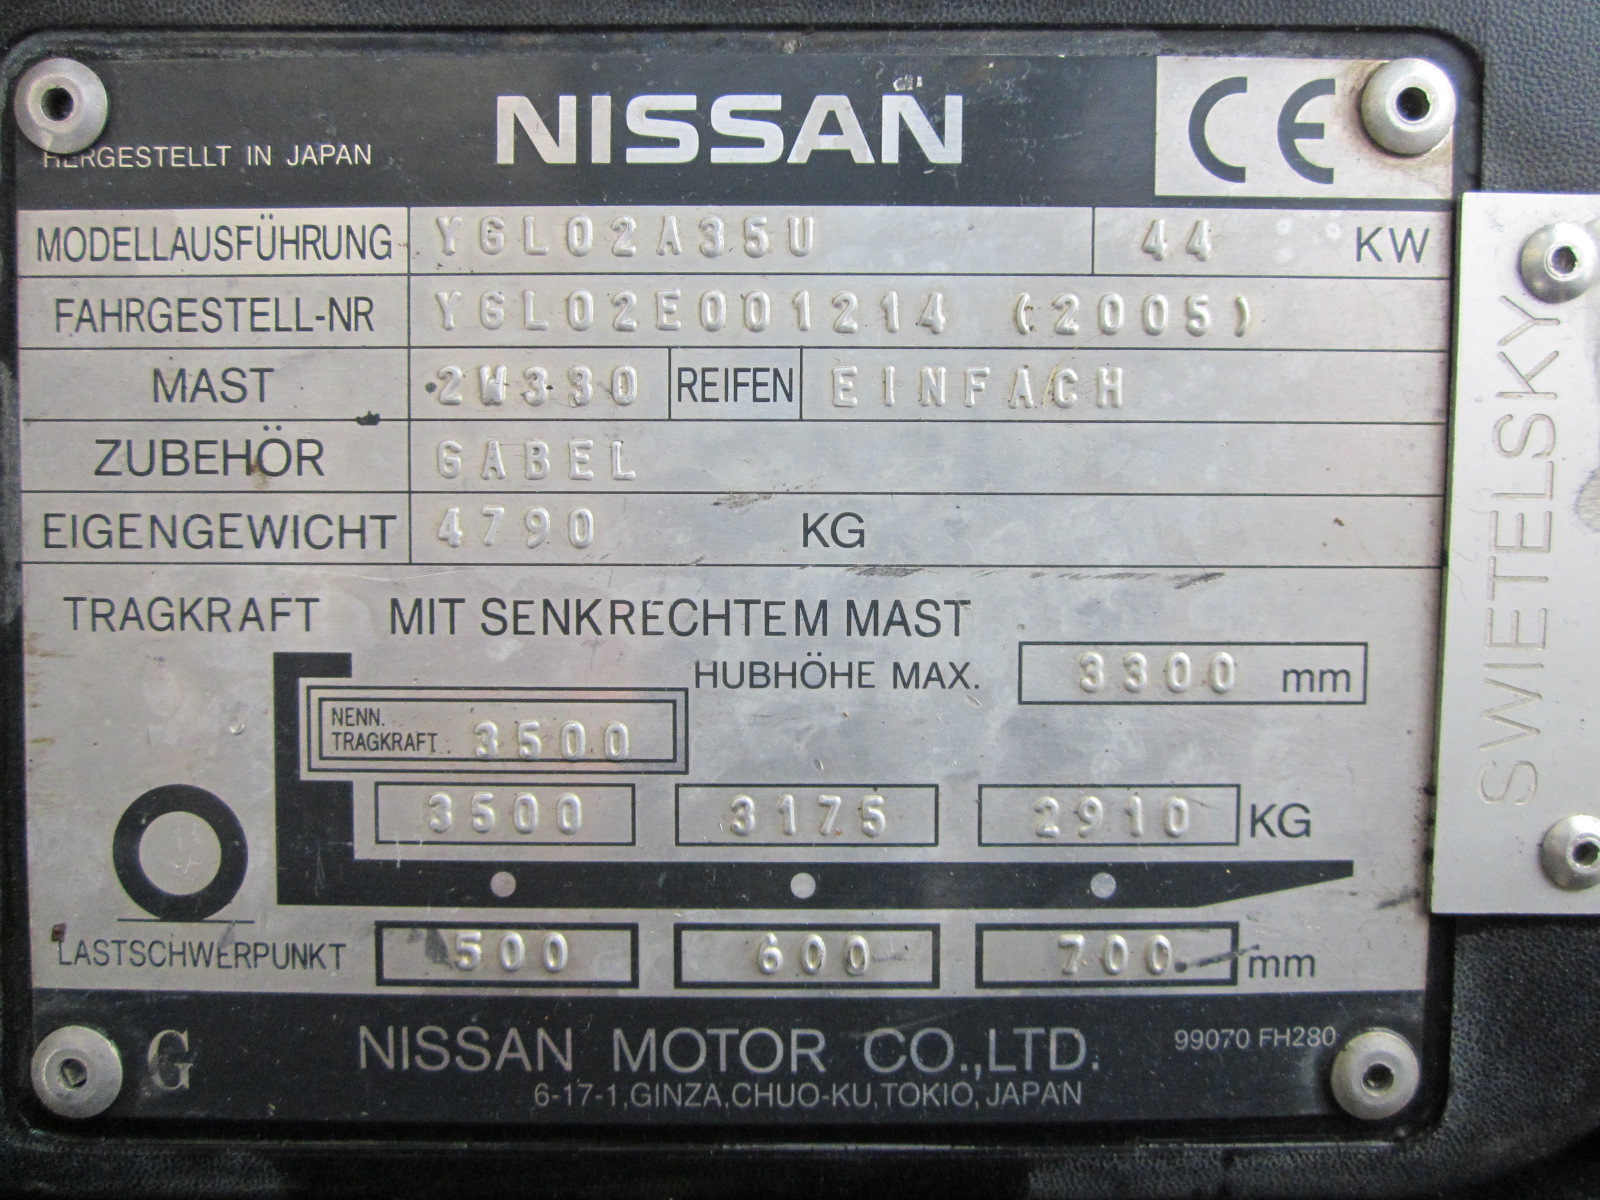 Nissan YGL02A35U